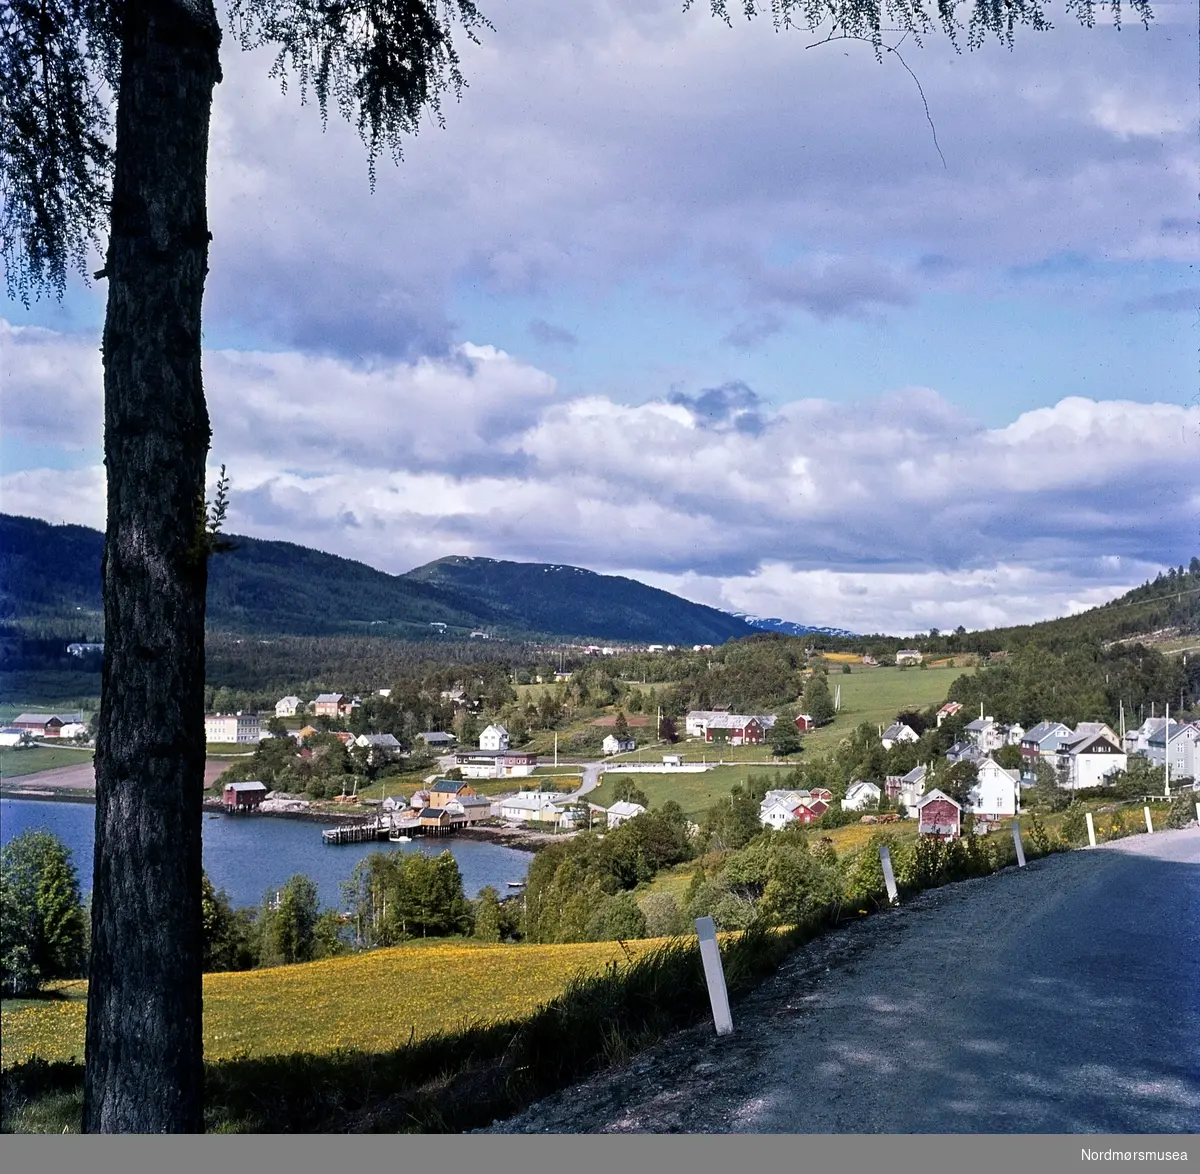 Landskapsbilde med tettstedet Tingvoll på Nordmøre i bakgrunnen.
 Portfoliodias fra fotograf Nils Willams sitt arkiv. Nordmøre Museums fotosamlinger.
